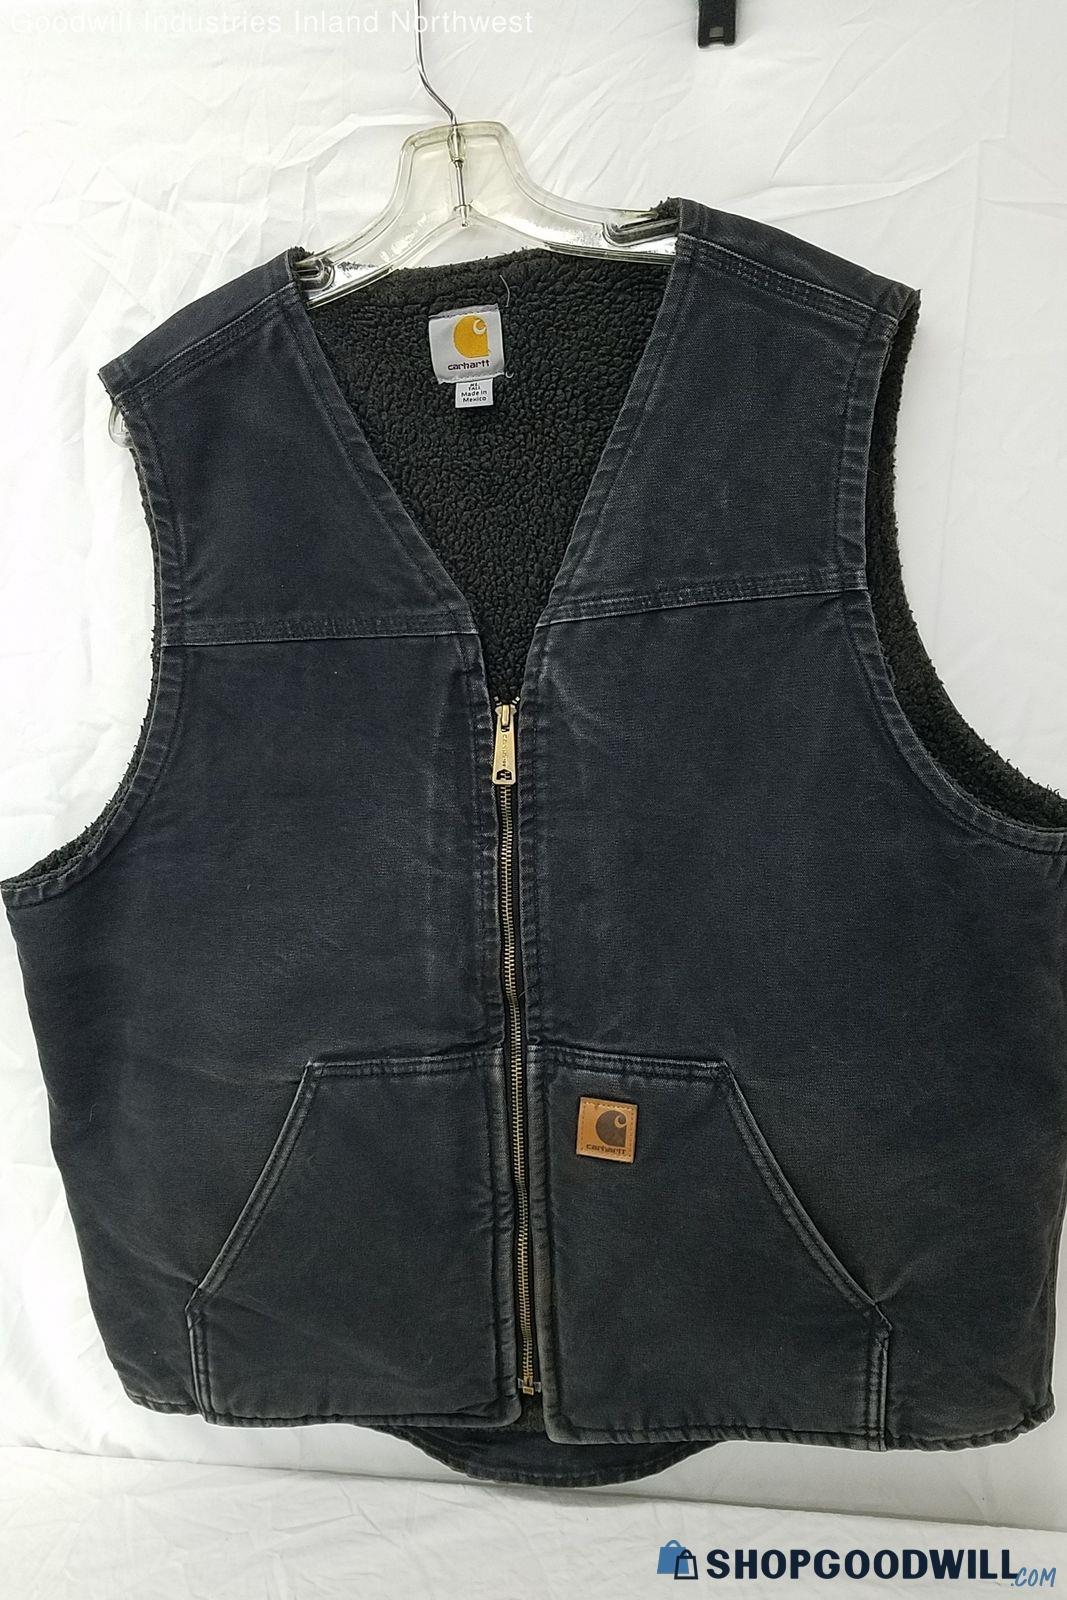 Used Men's Carhartt Black Denim Vest Size Xl Tall | ShopGoodwill.com